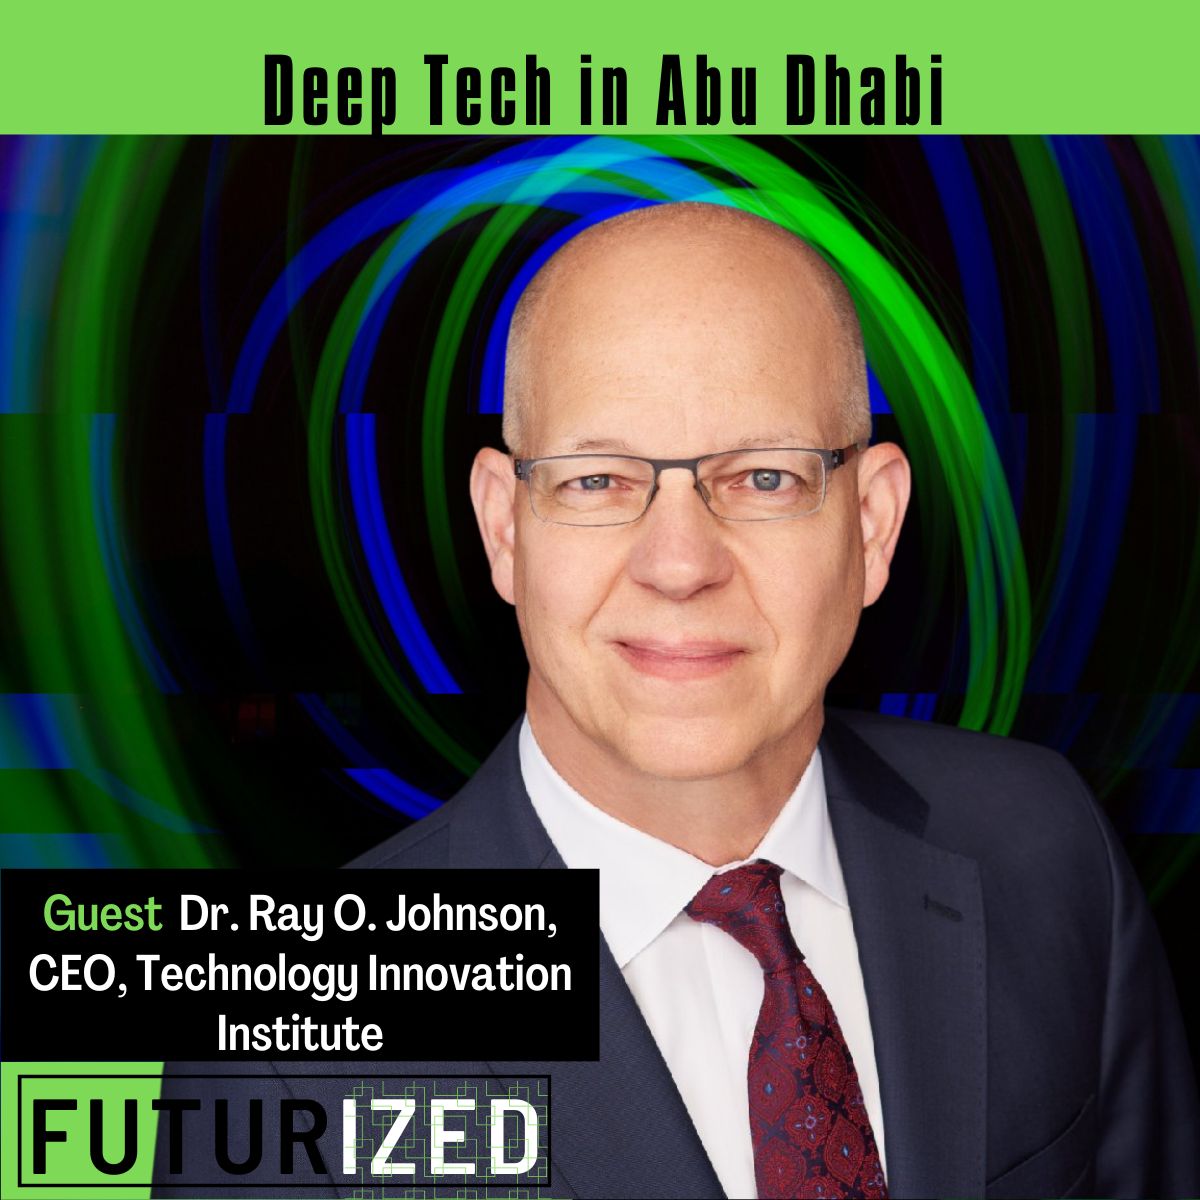 Deep Tech in Abu Dhabi